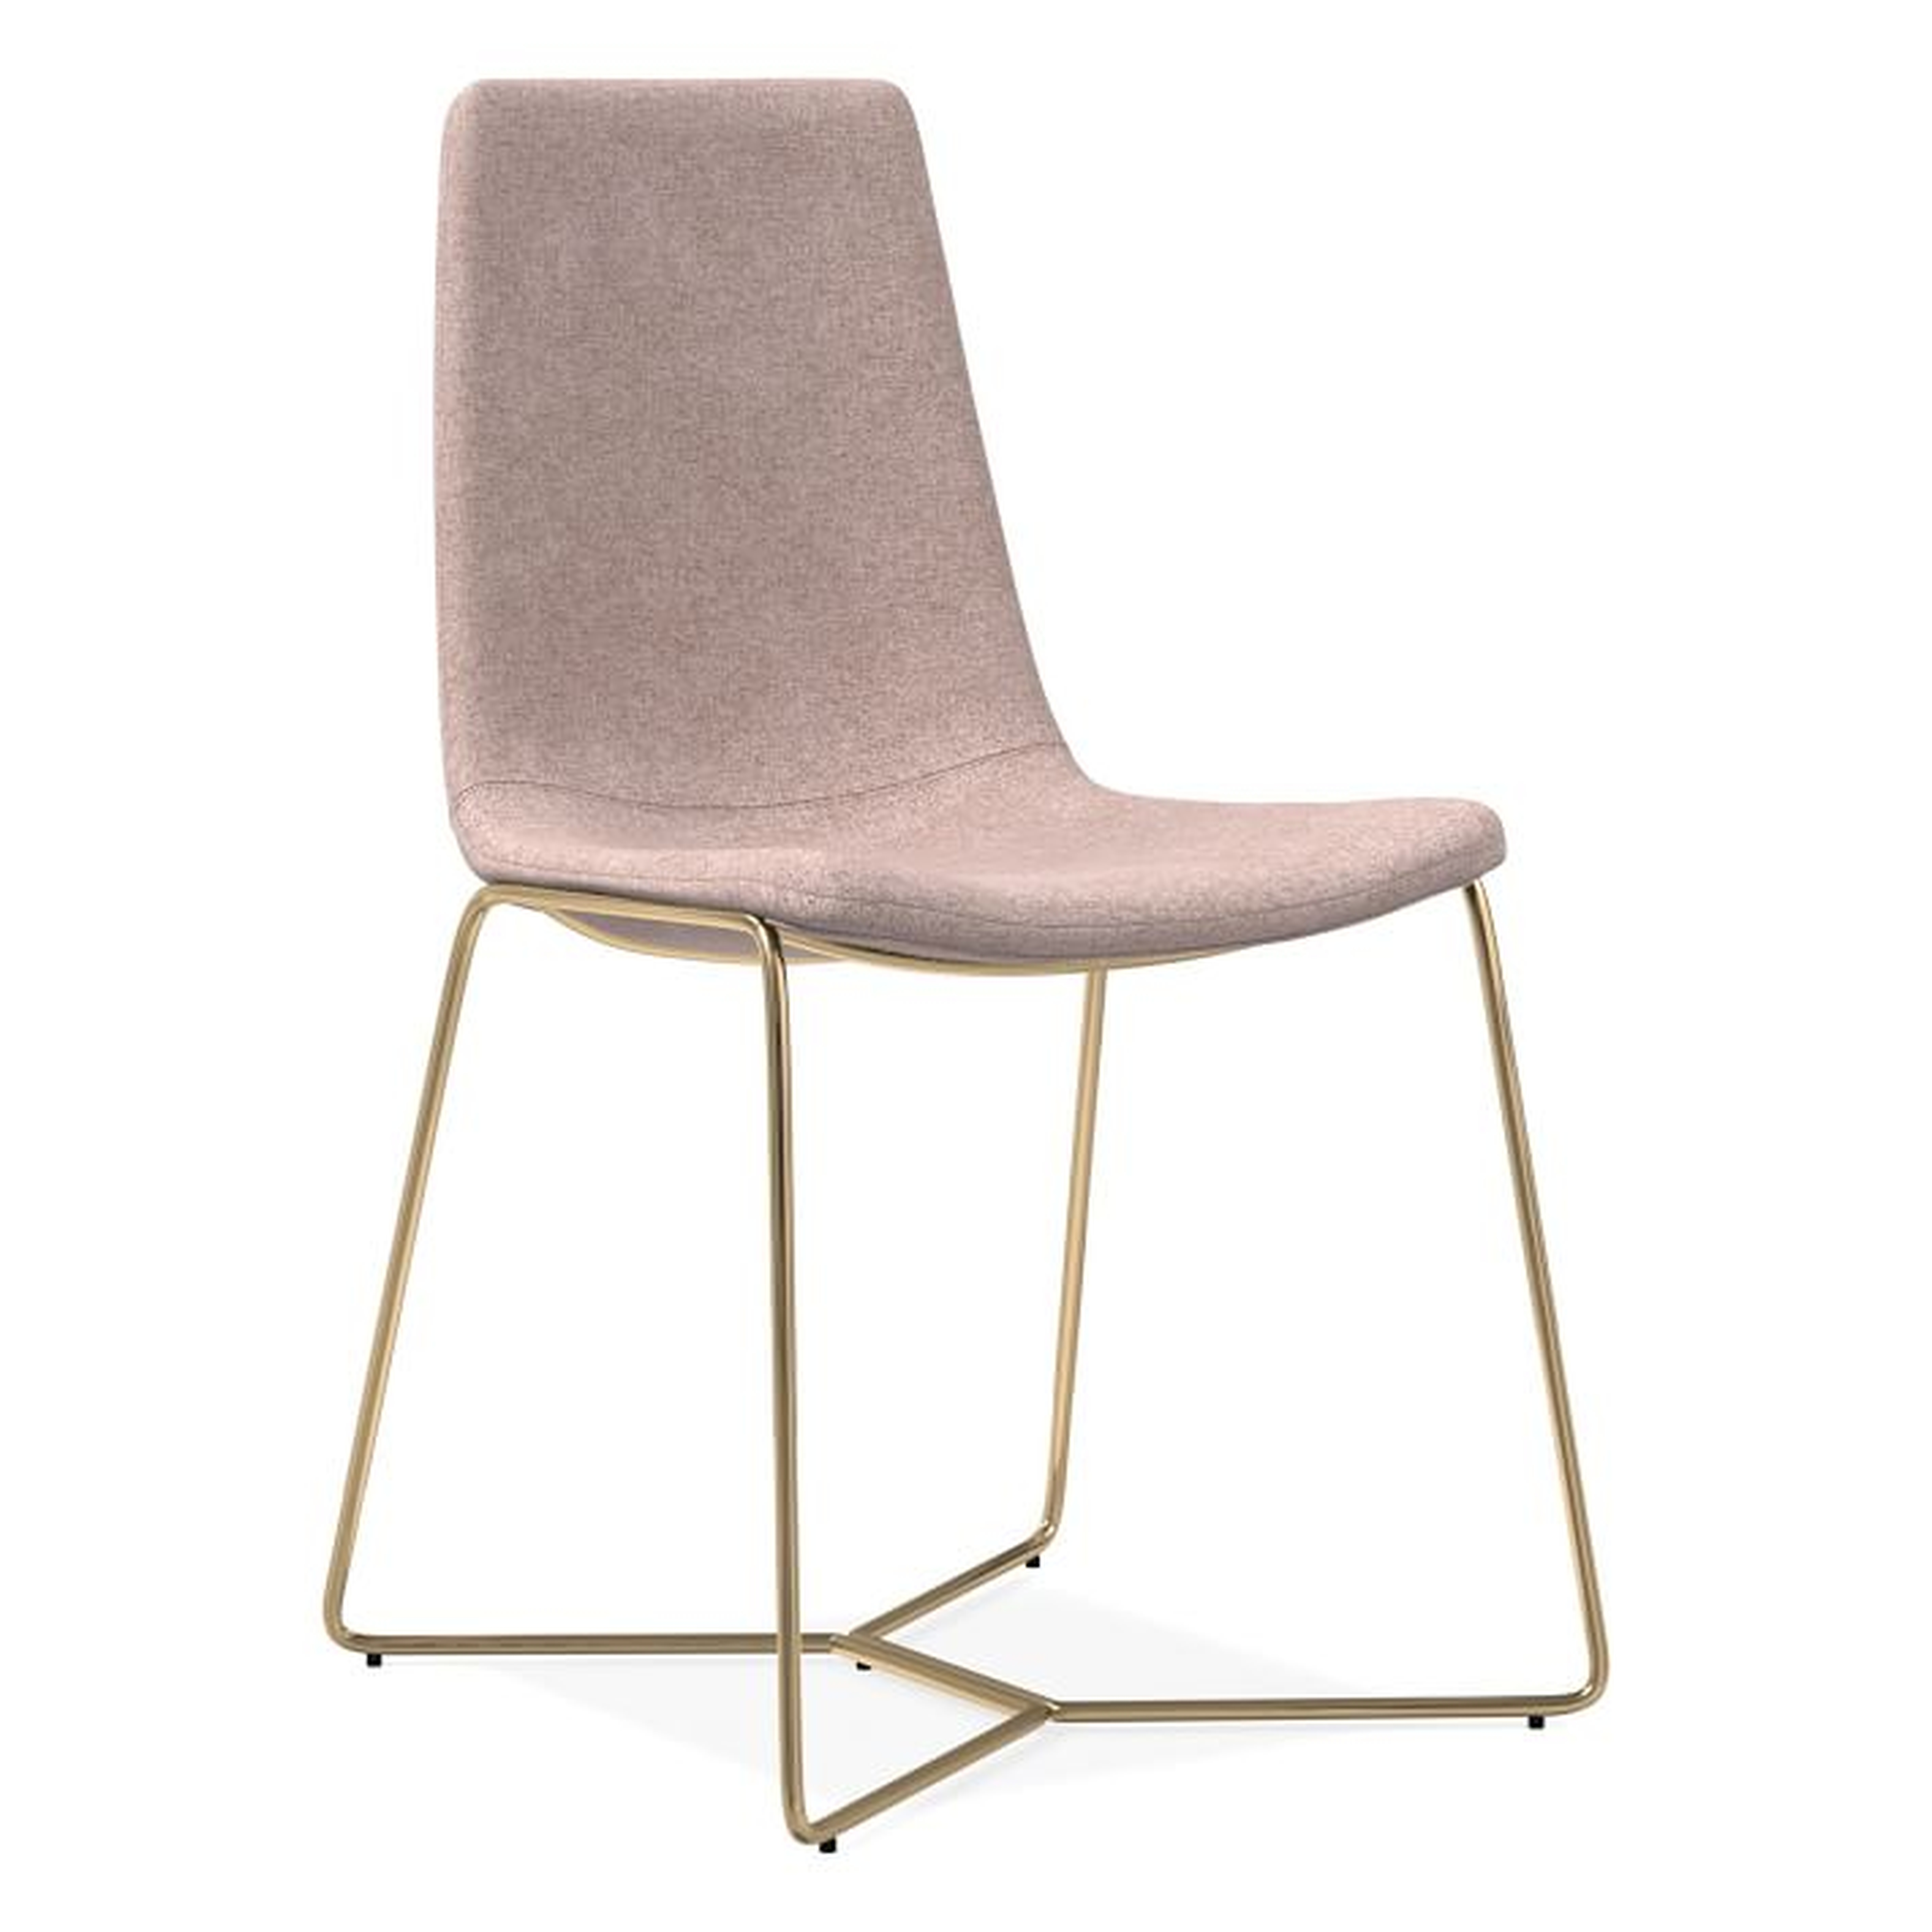 Slope Upholstered Dining Chair - light pink astor velvet - West Elm